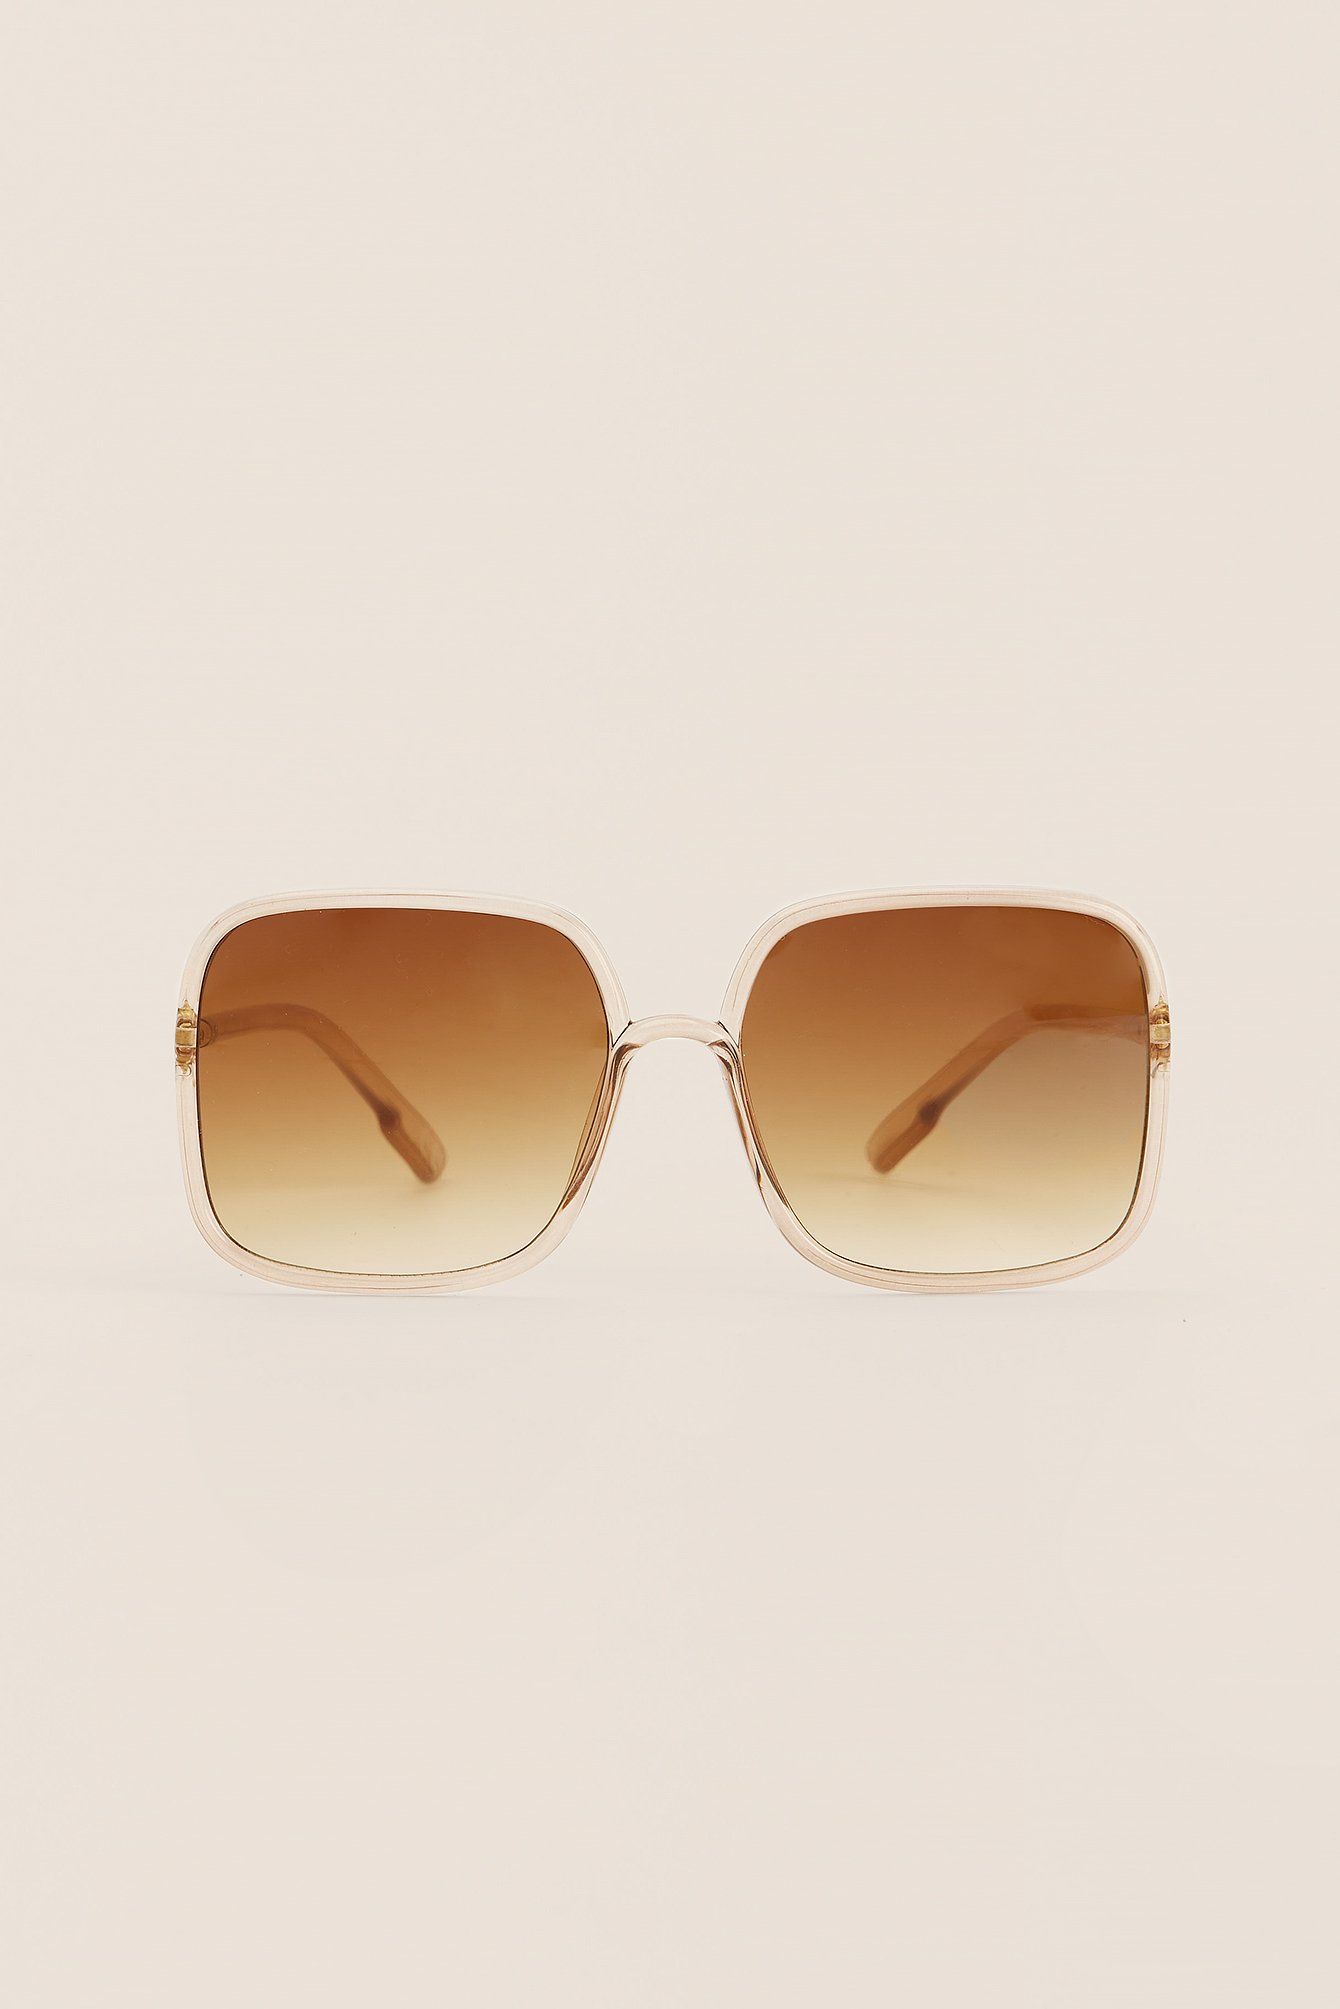 Brown Sonnenbrille mit breitem Rahmen und schlanker Form